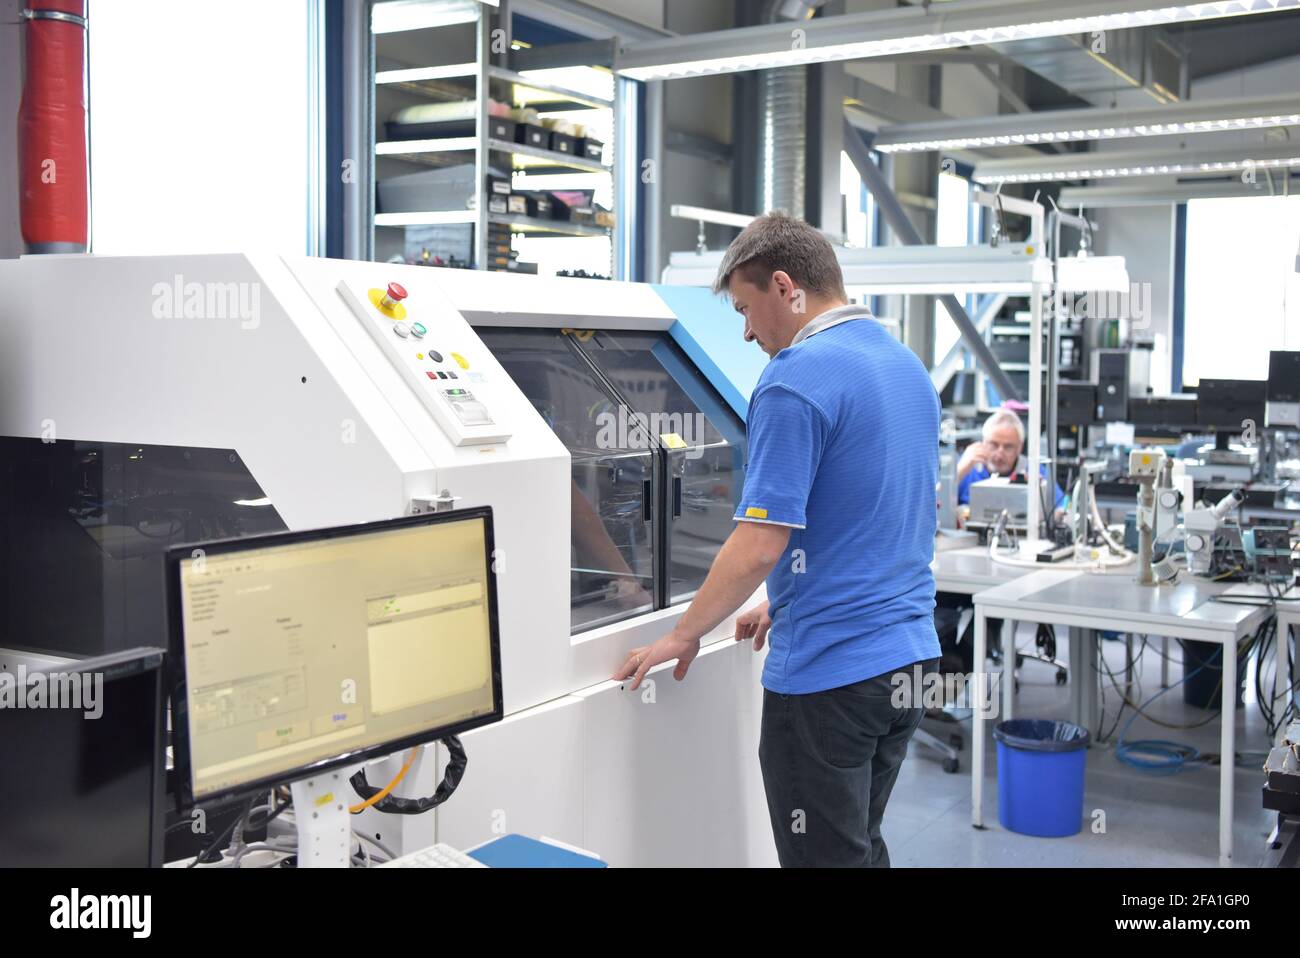 In ingegneria microelettronica: i lavoratori nella produzione e assemblaggio di electronic high tech componenti in un moderno stabilimento Foto Stock